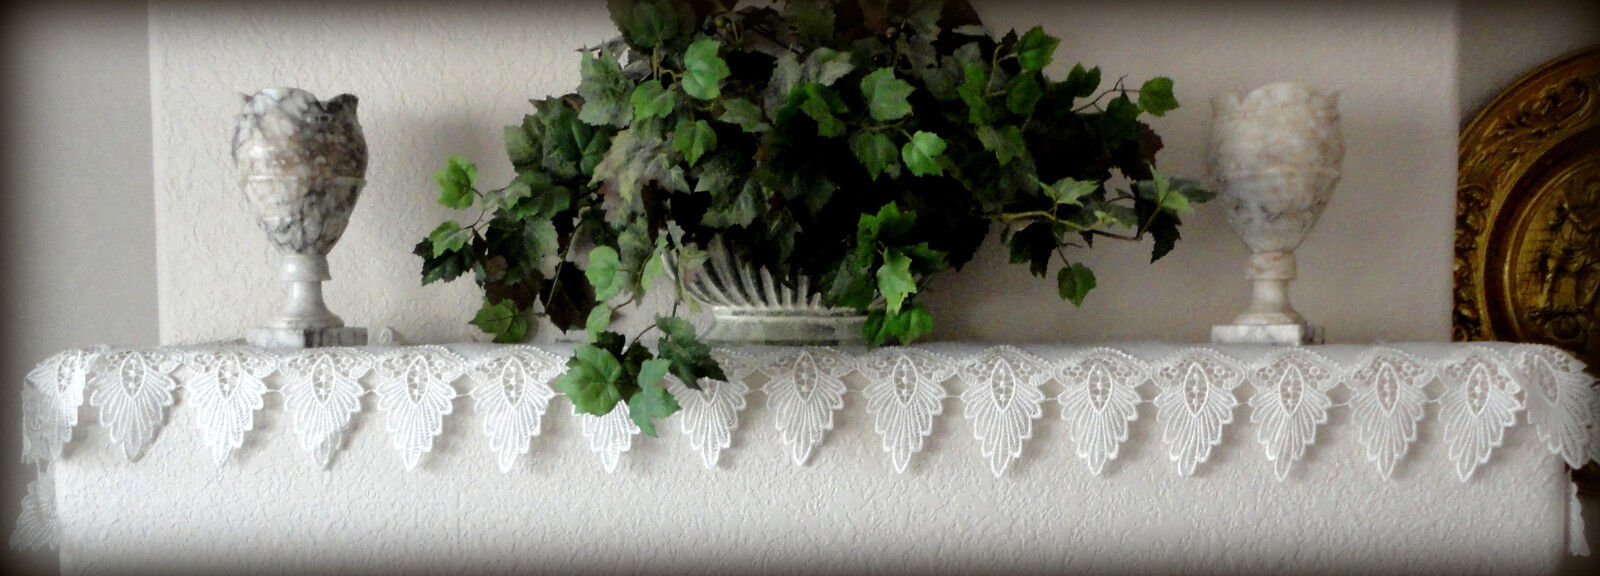 Antique White Dresser Scarf 64" Formal European Lace Mantel Scarf  Runner Doily Без бренда - фотография #2